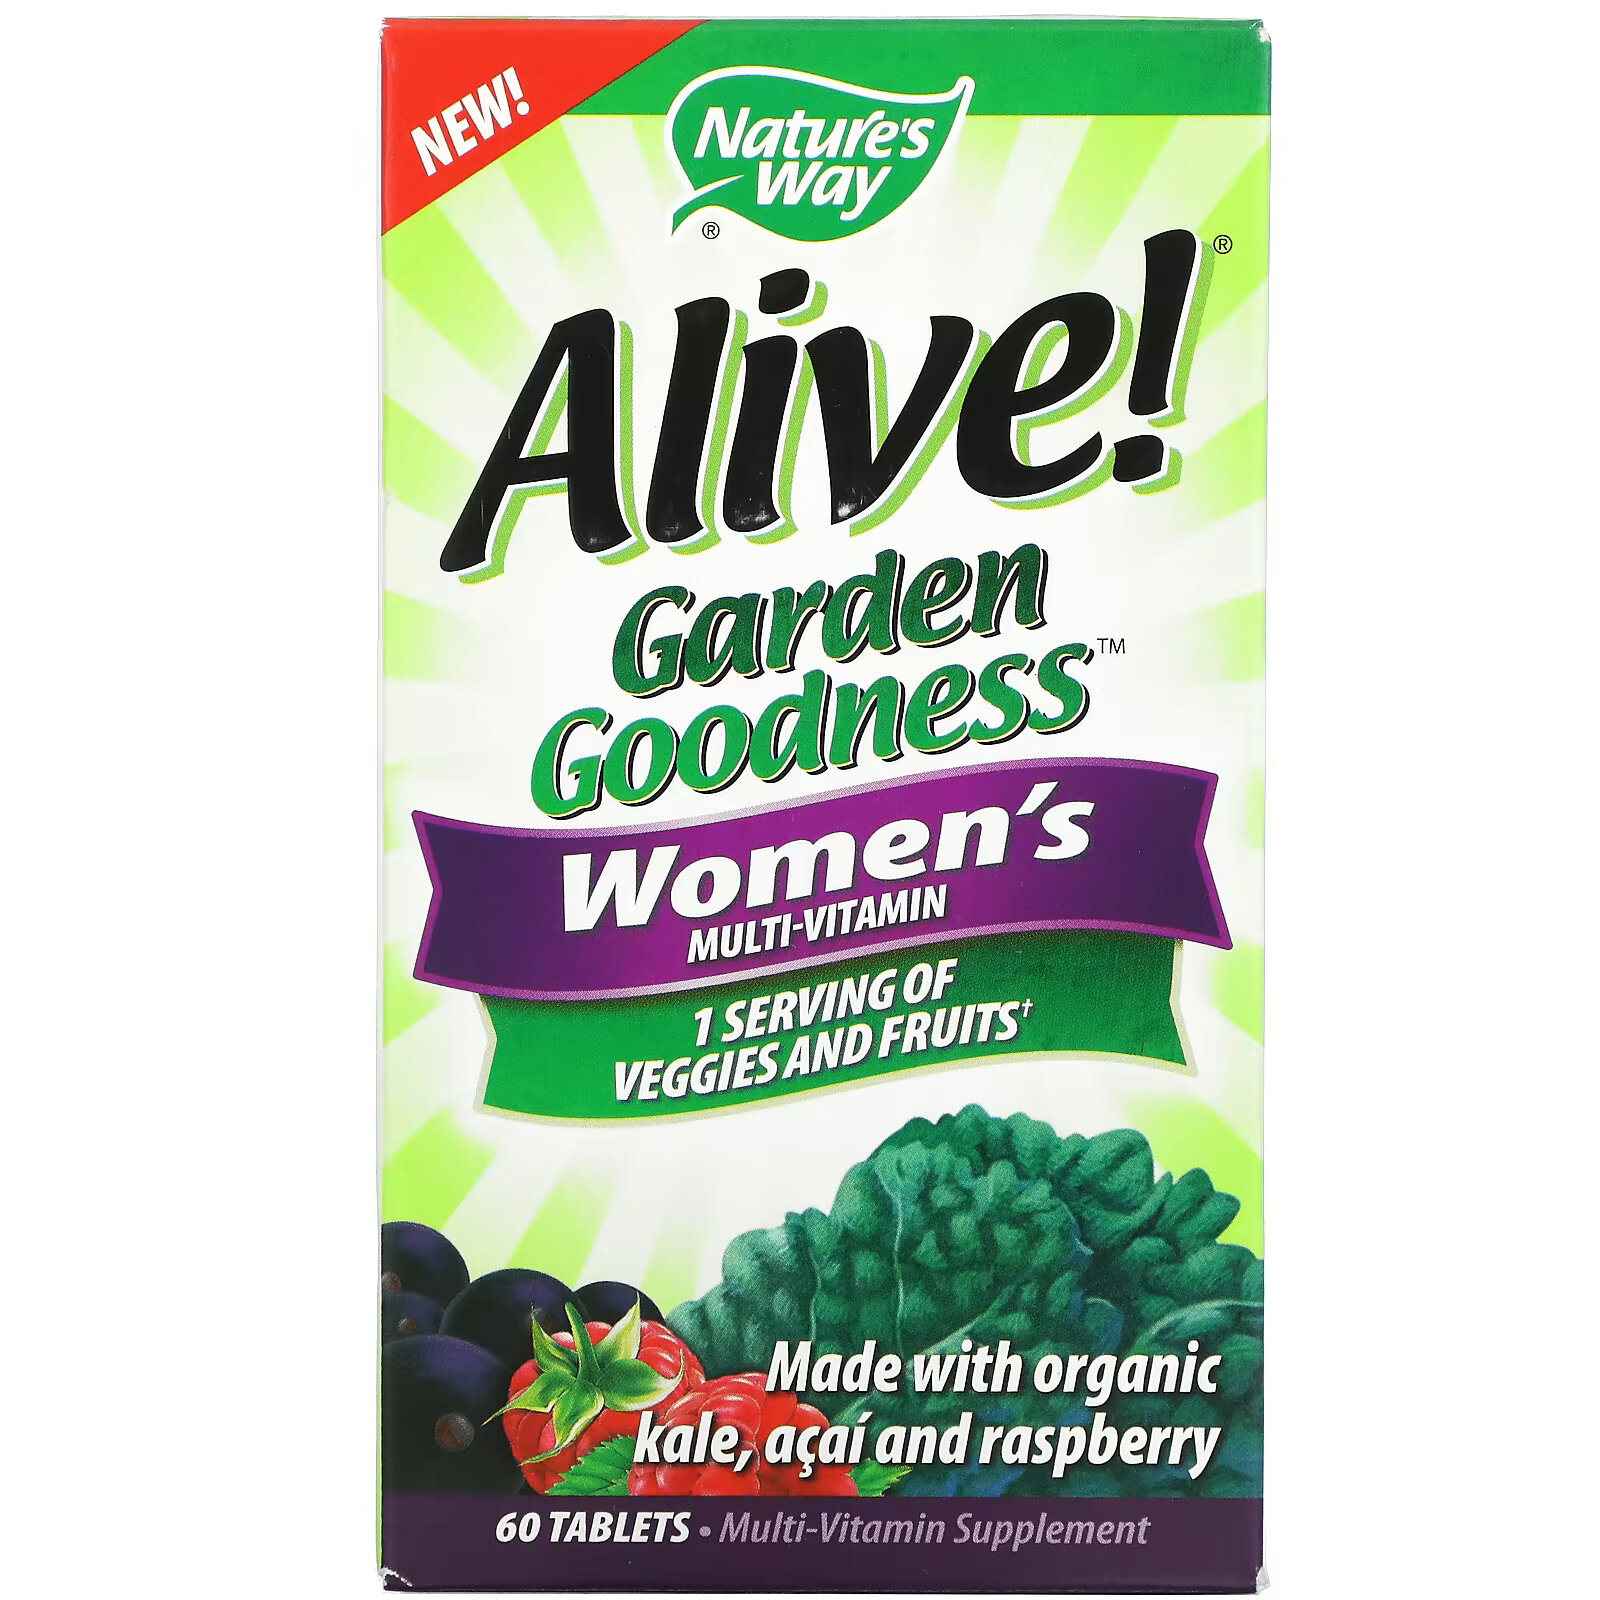 Мультивитамин Nature's Way Alive! Garden Goodness для женщин, 60 таблеток nature s way alive garden goodness men s multivitamin 60 tablets